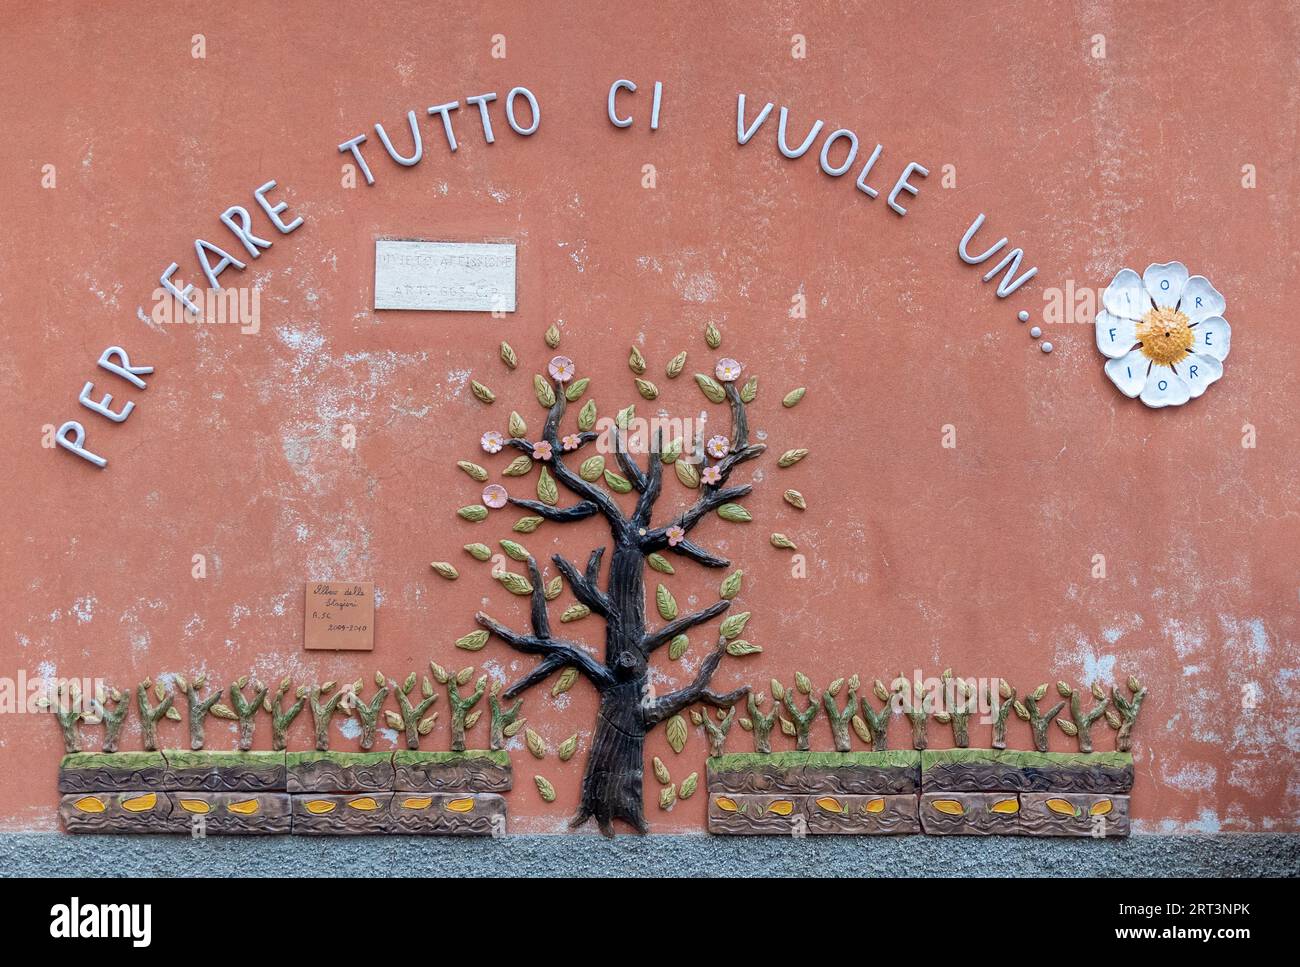 Detail einer keramischen Wanddekoration an der Fassade eines Kindergartens mit dem Text: "Alles machen, was es braucht, eine Blume", Savona, Ligurien, Italien Stockfoto